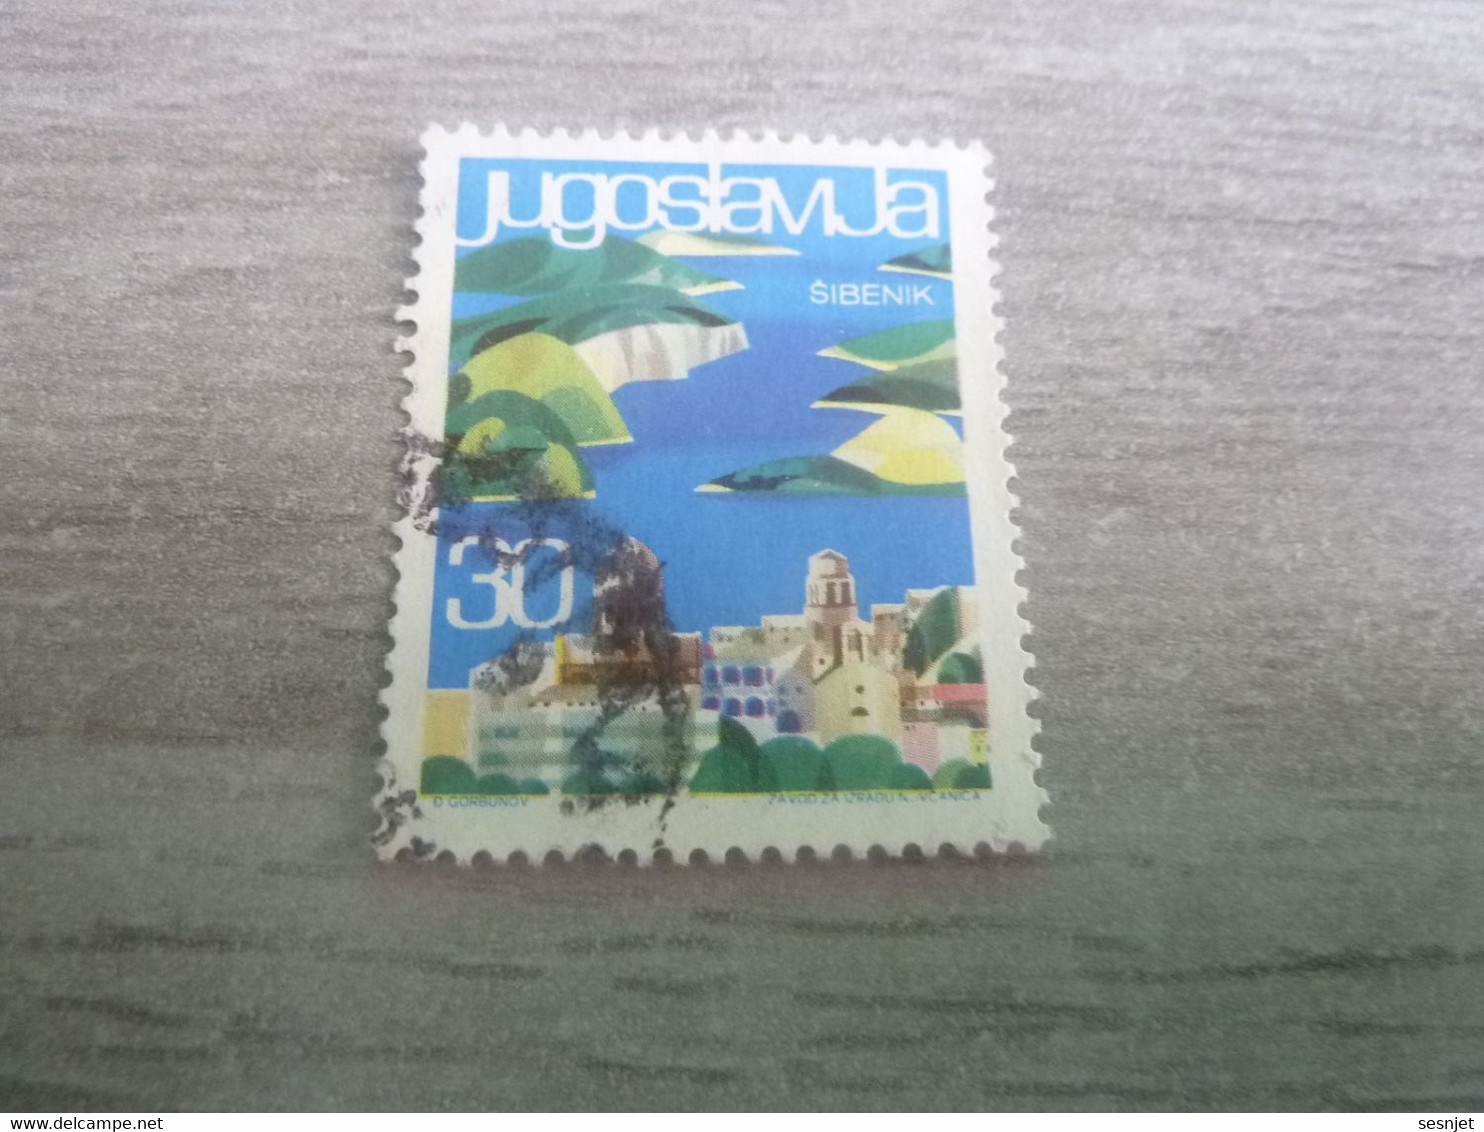 Jugoslavija - Sibenik - Val 30 - Multicolore - Oblitéré - - Gebruikt